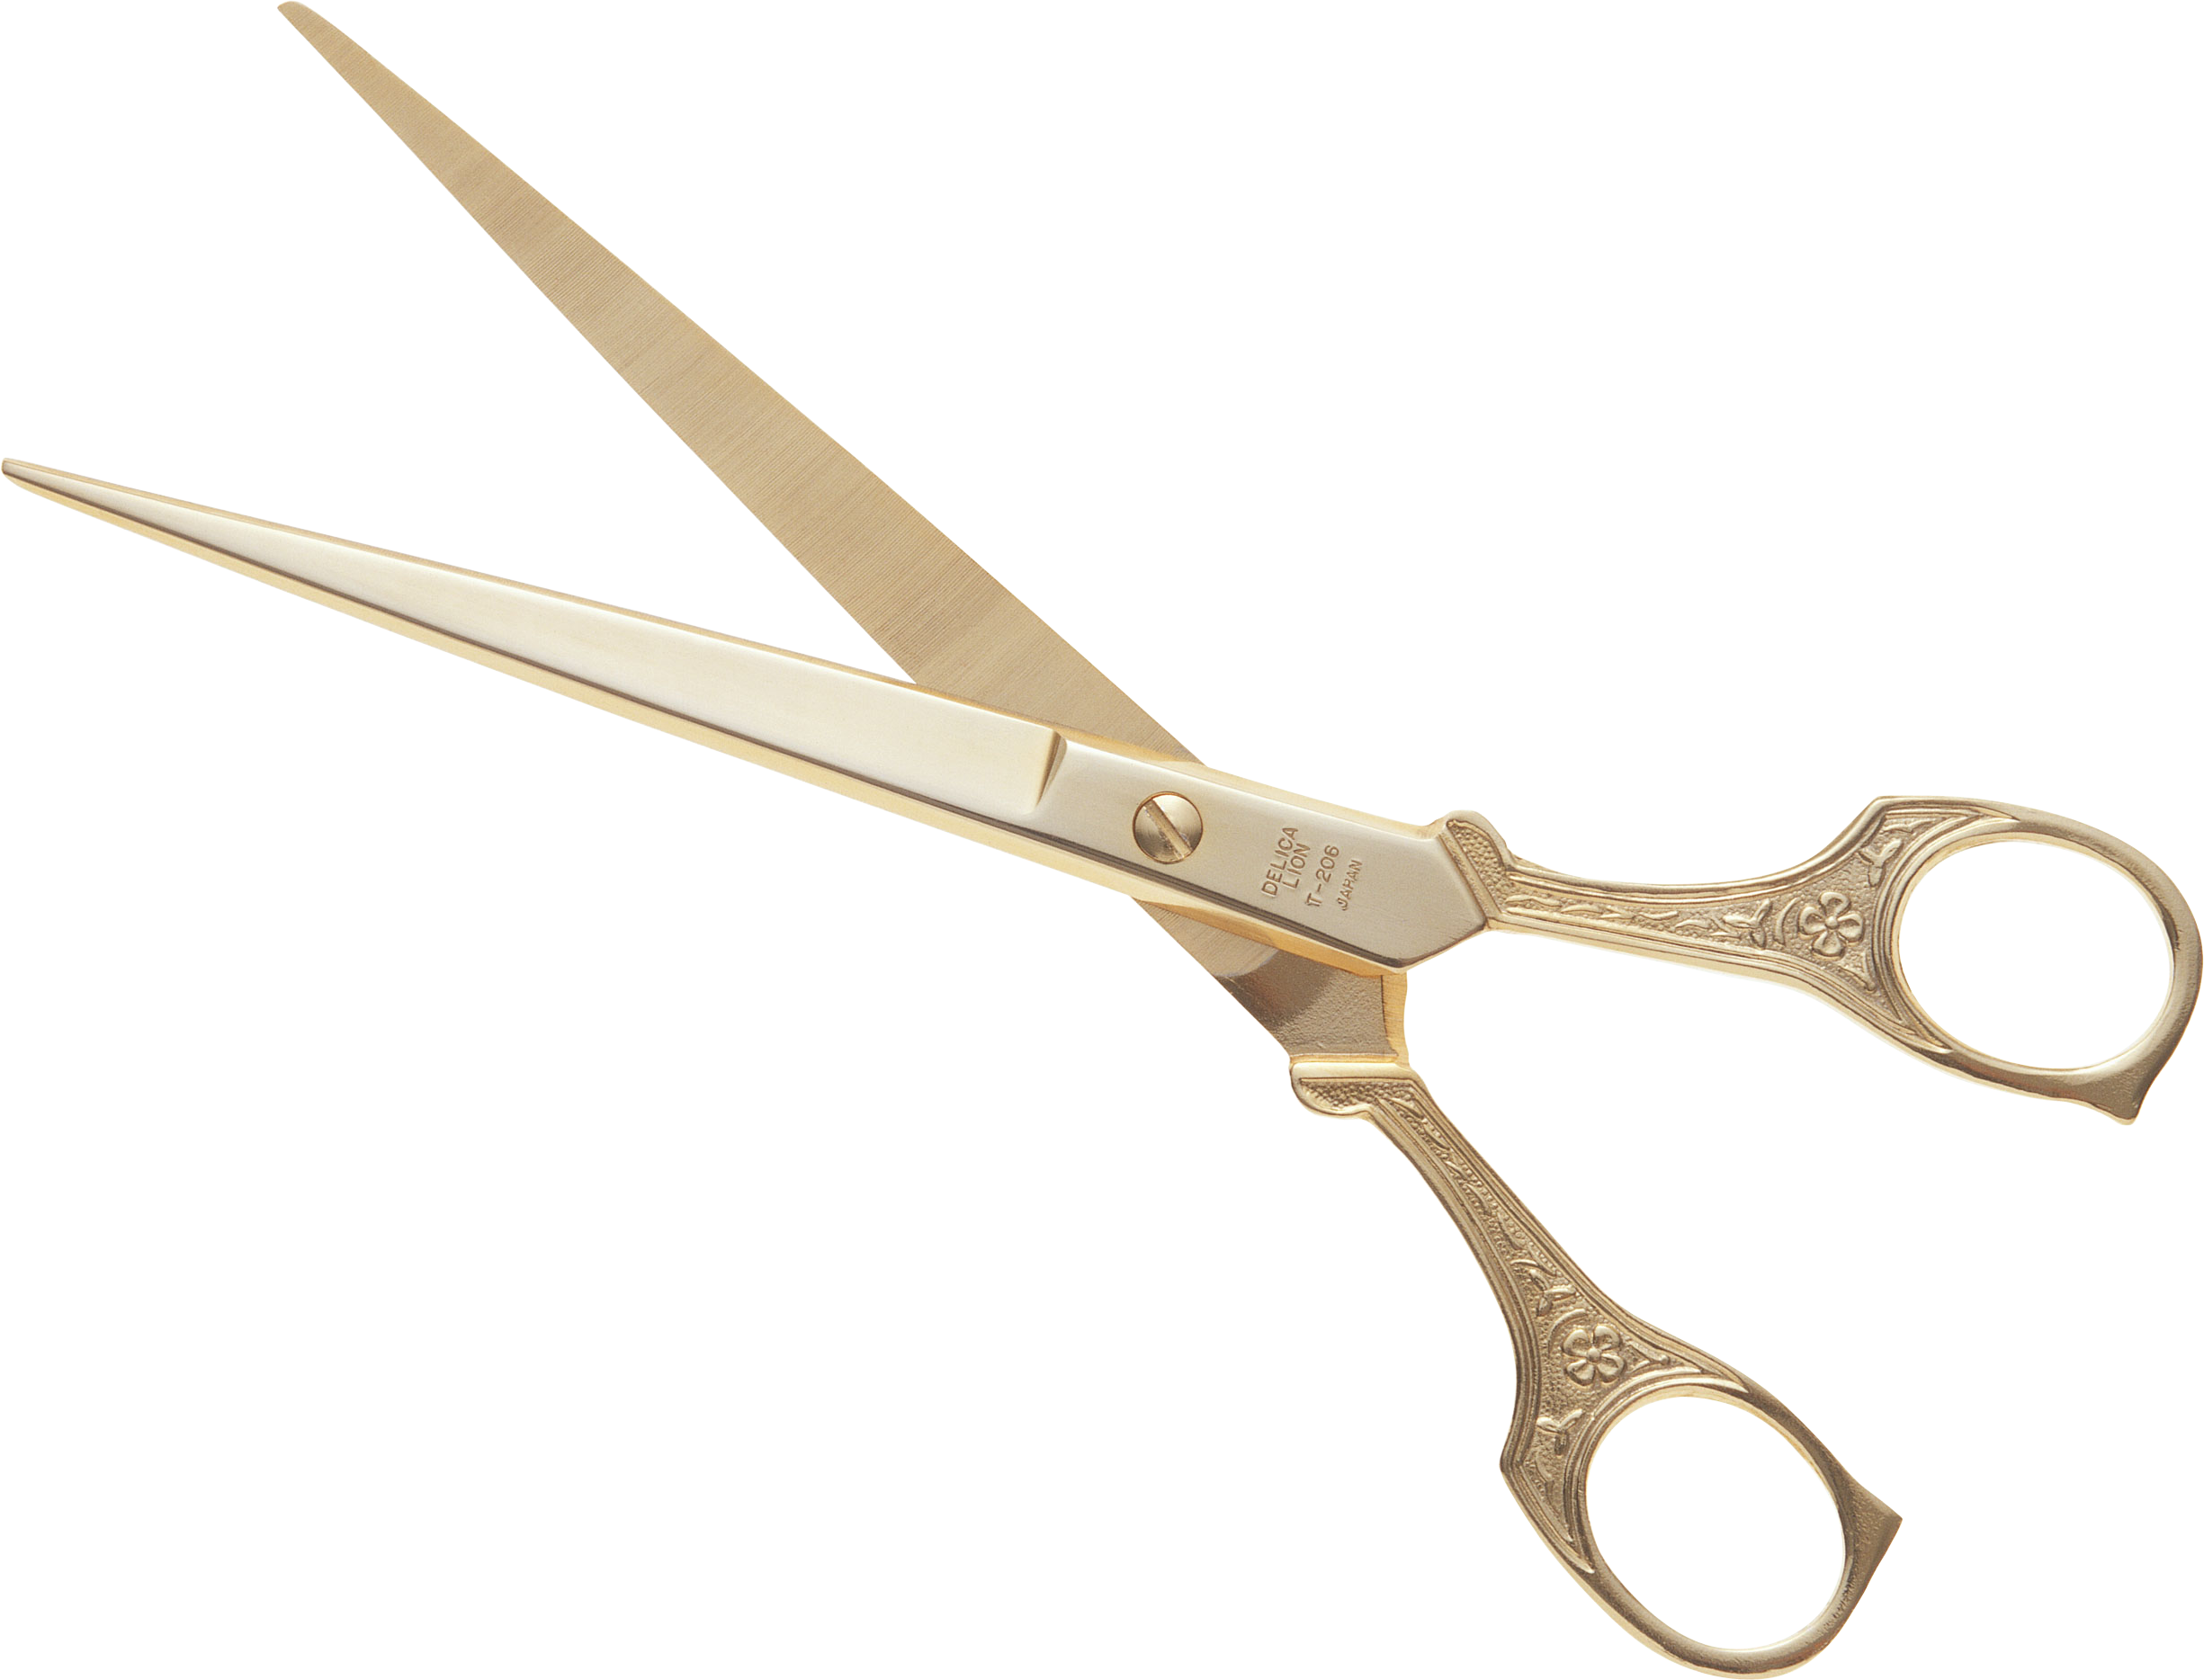 shears clipart barber scissors